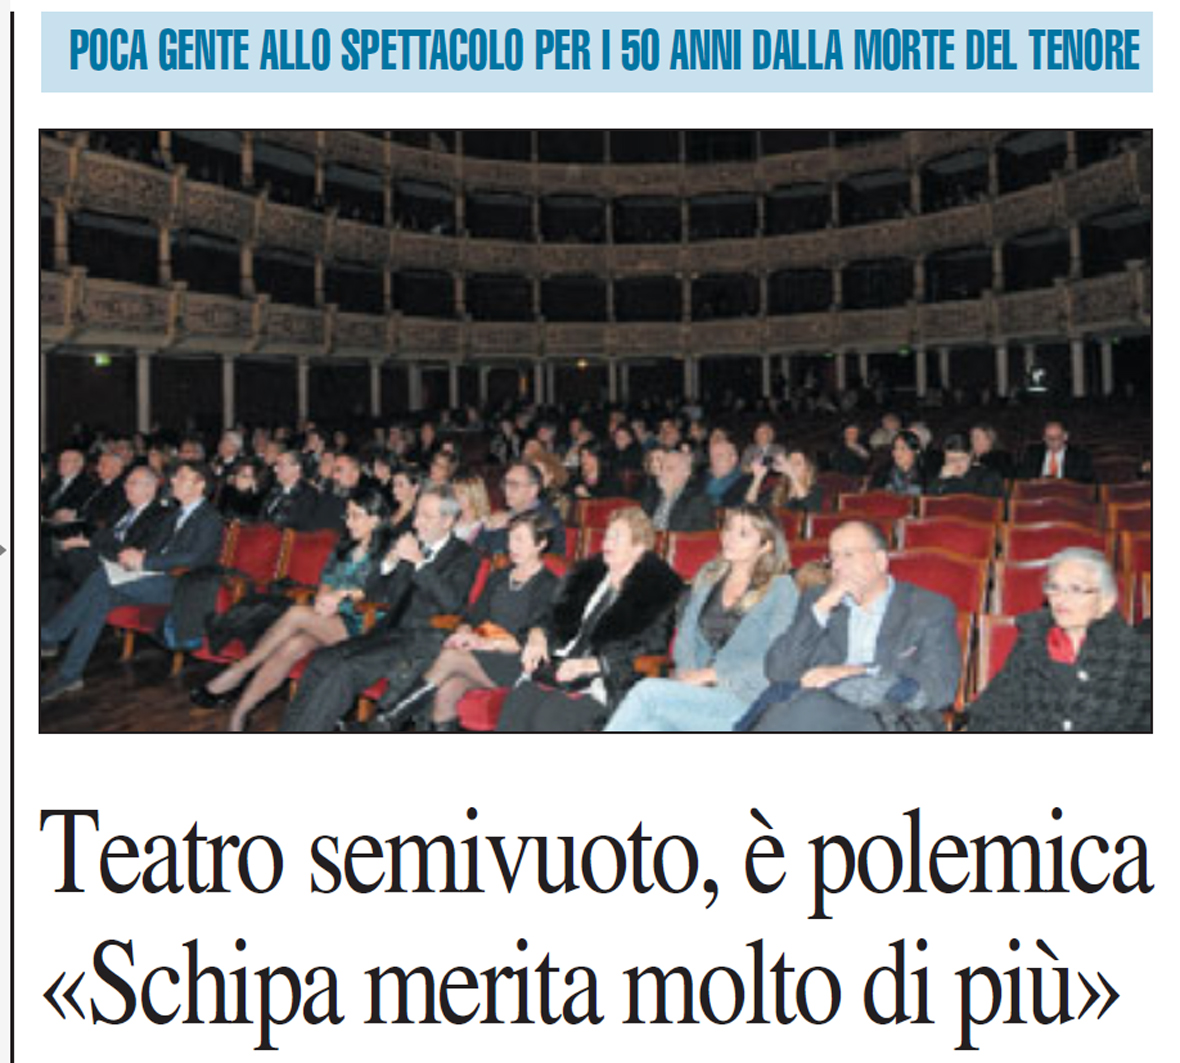 TITO SCHIPA, 50° anniversario della scomparsa ©Copyright Gianni Carluccio